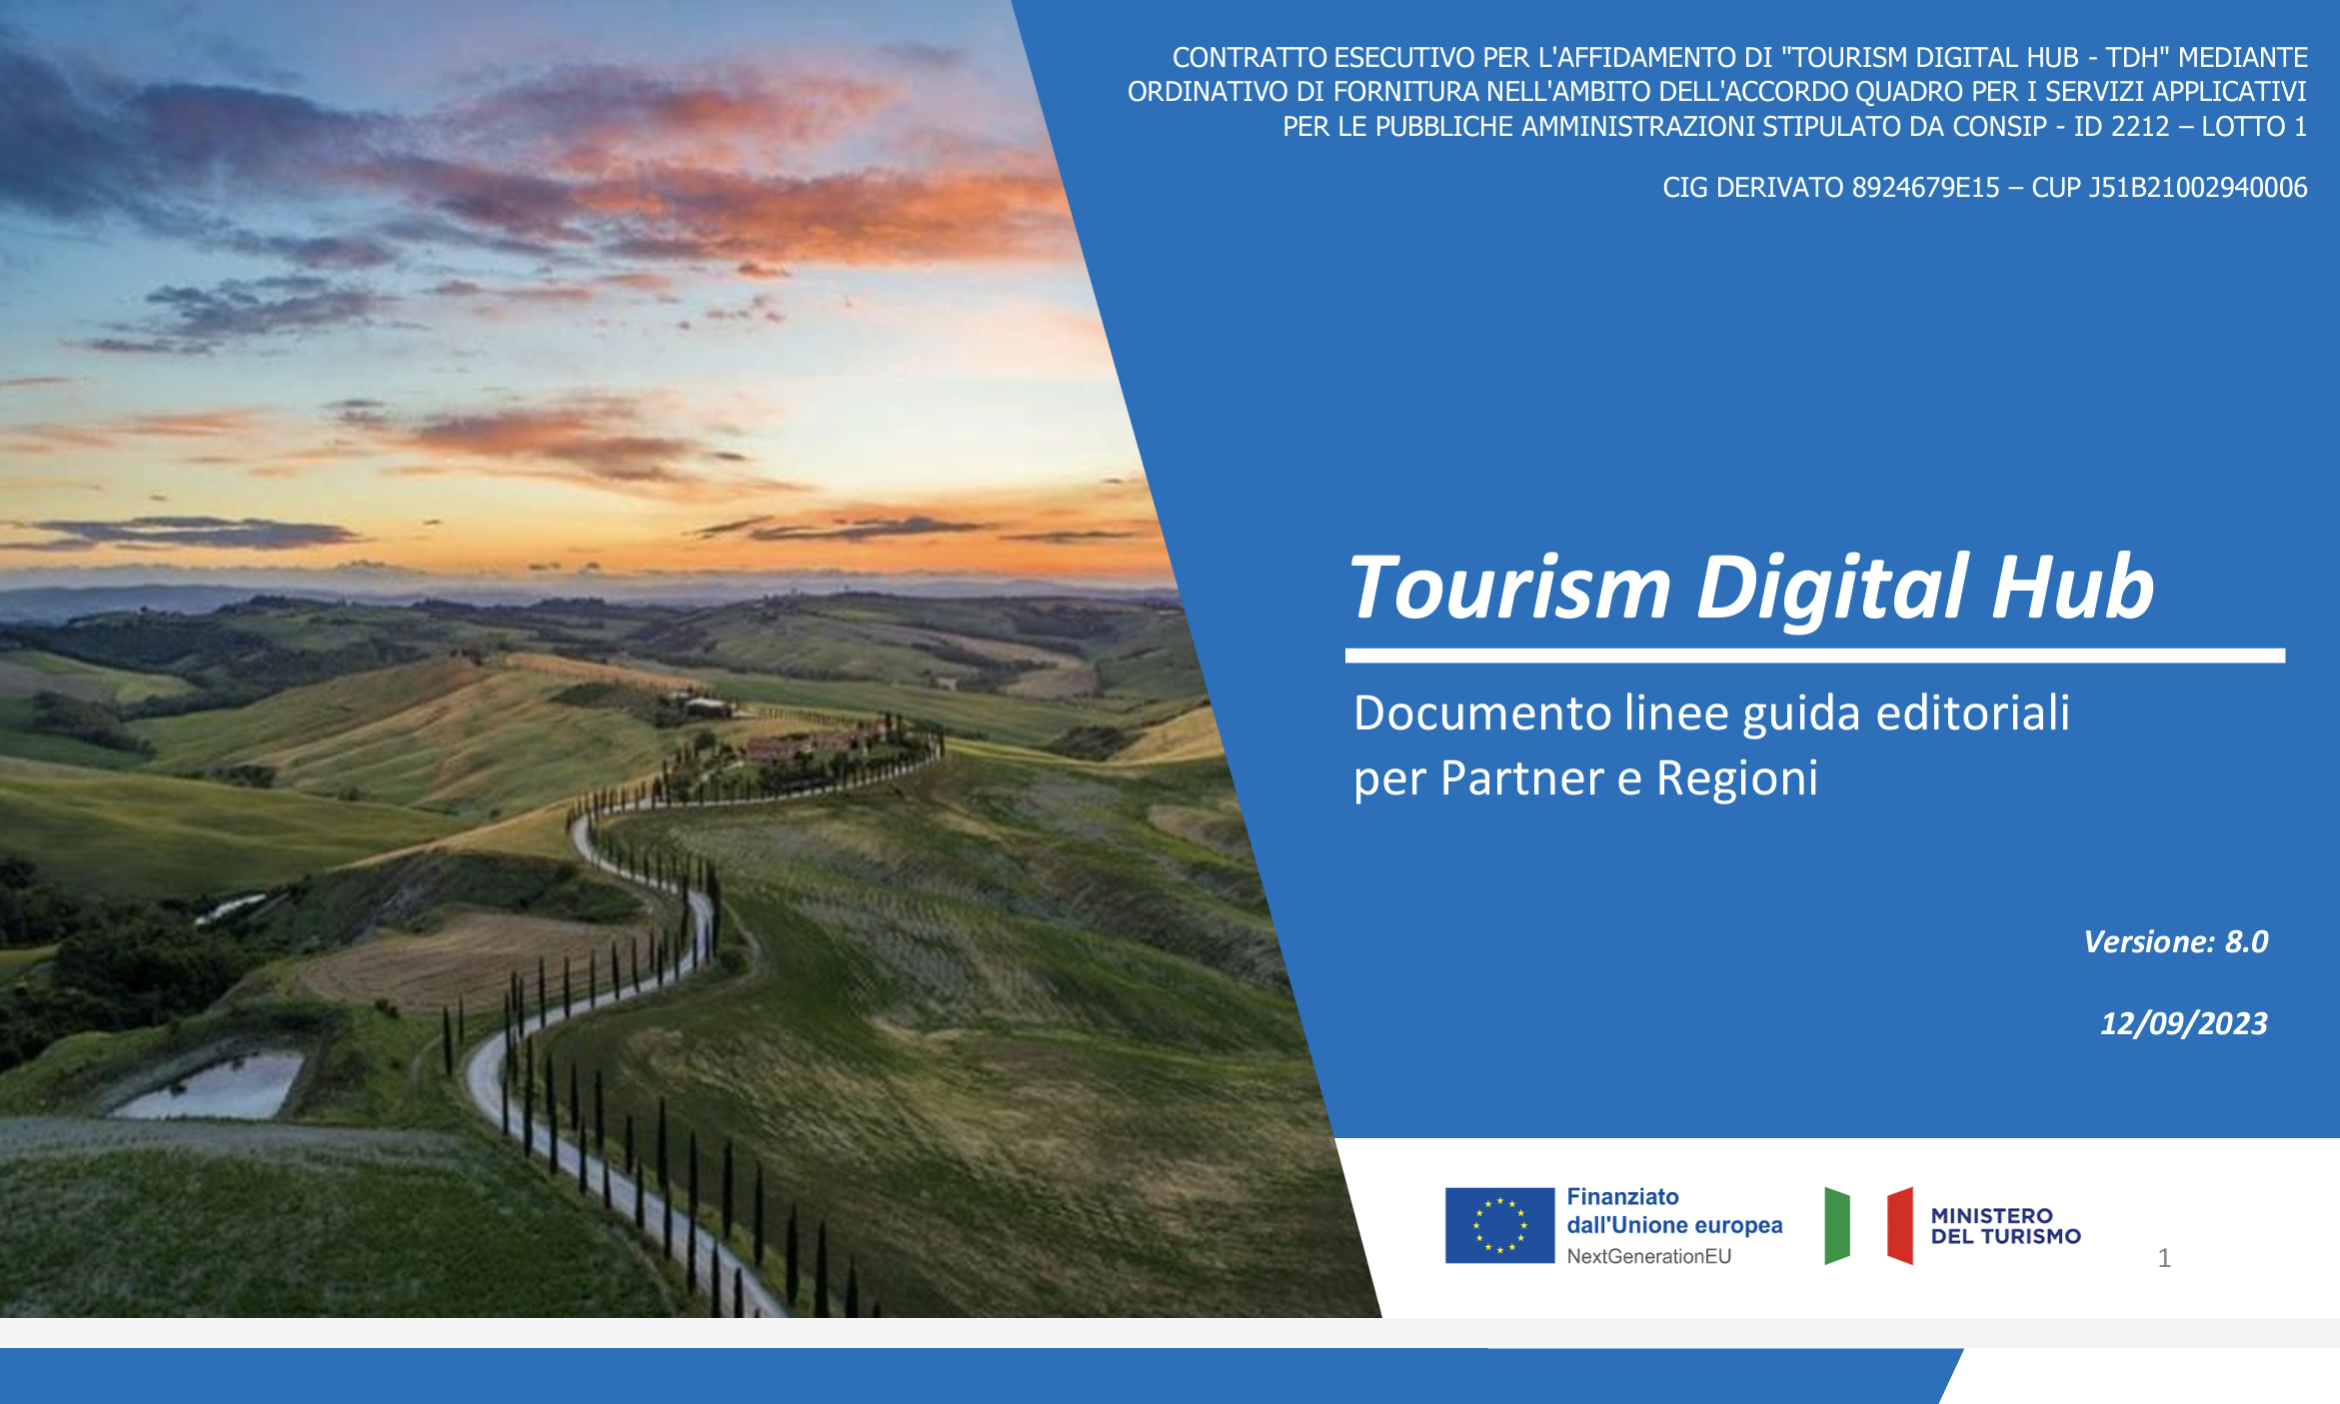 Tourism Digital Hub: Il futuro del turismo italiano è digitale